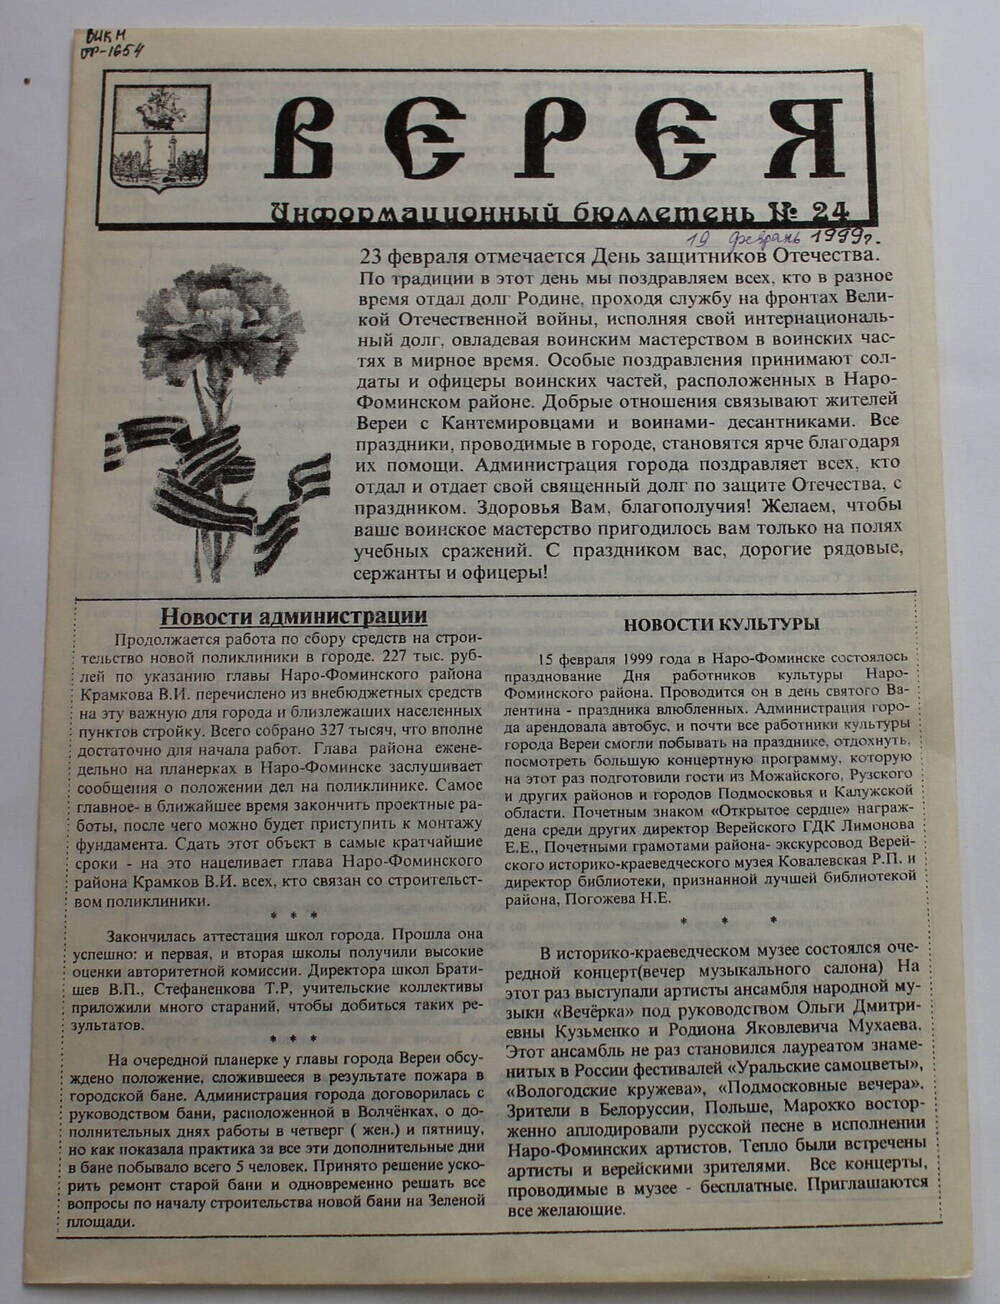 Информационный бюллетень администрации города Вереи №24 ВЕРЕЯ   
19  февраля 1999 г.